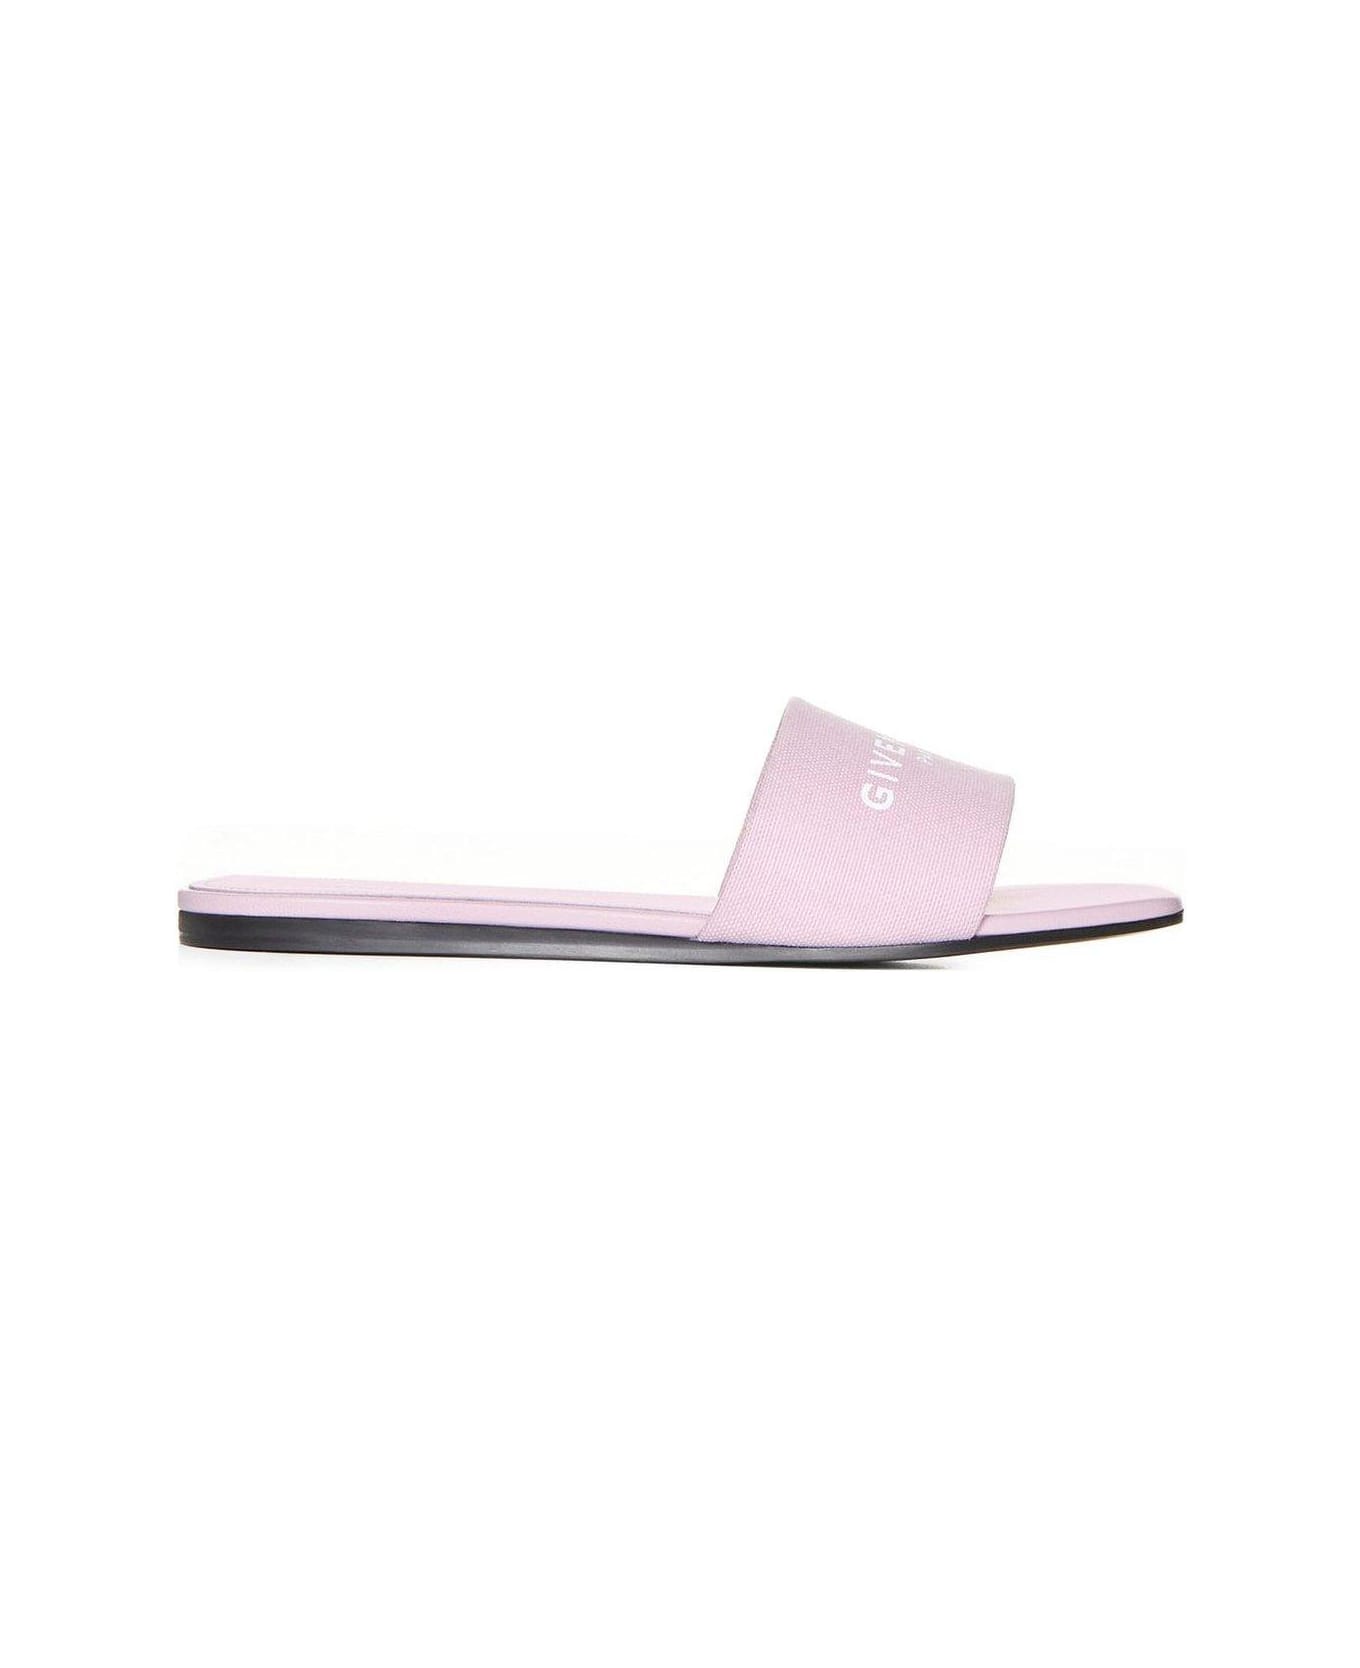 Givenchy Logo Printed Slides - Pink サンダル